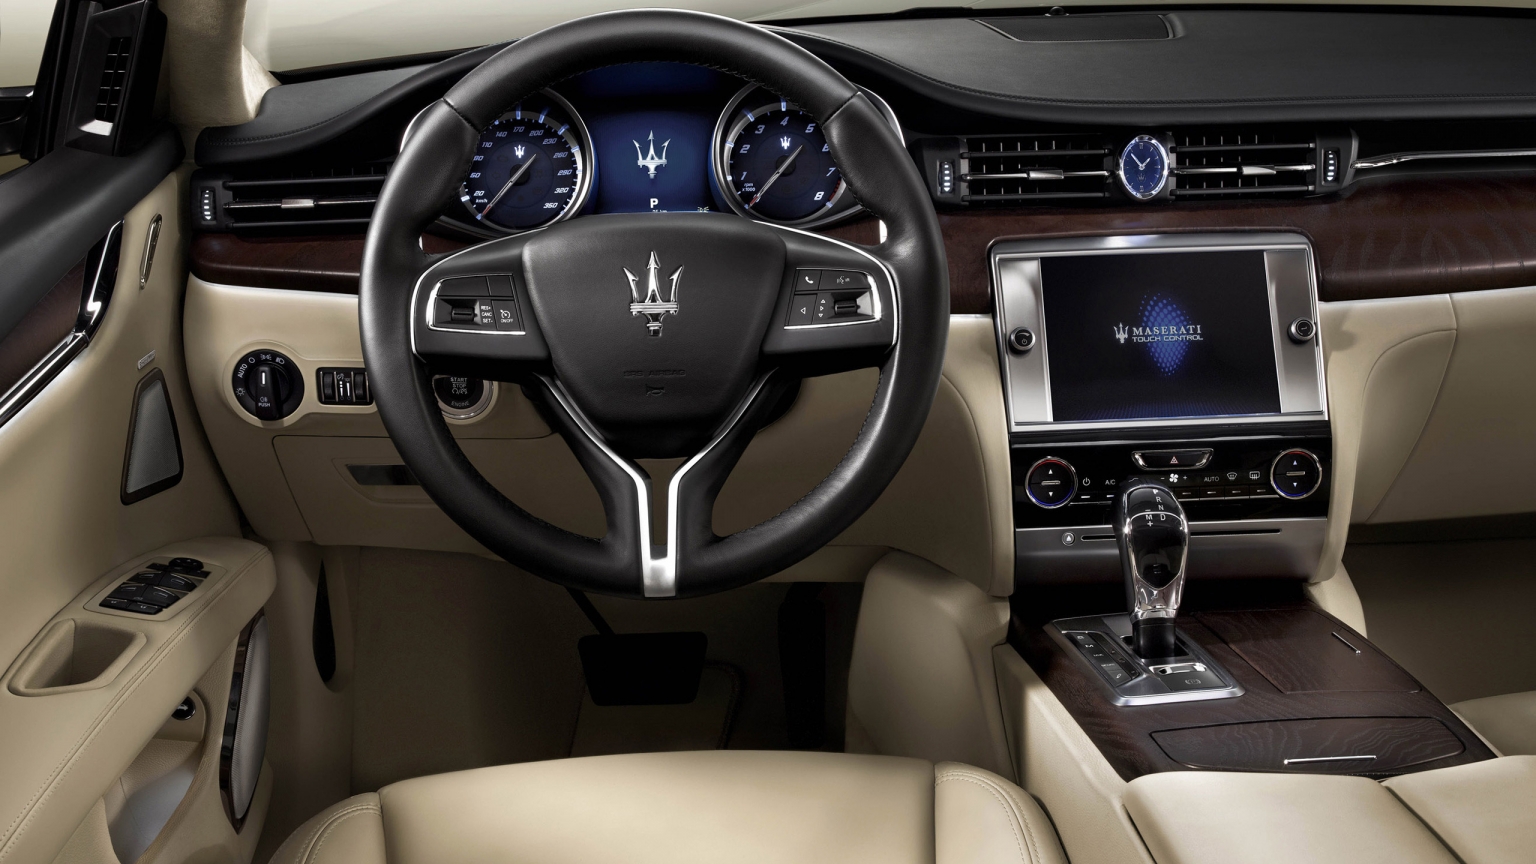 Interior of Maserati Quattroporte for 1536 x 864 HDTV resolution